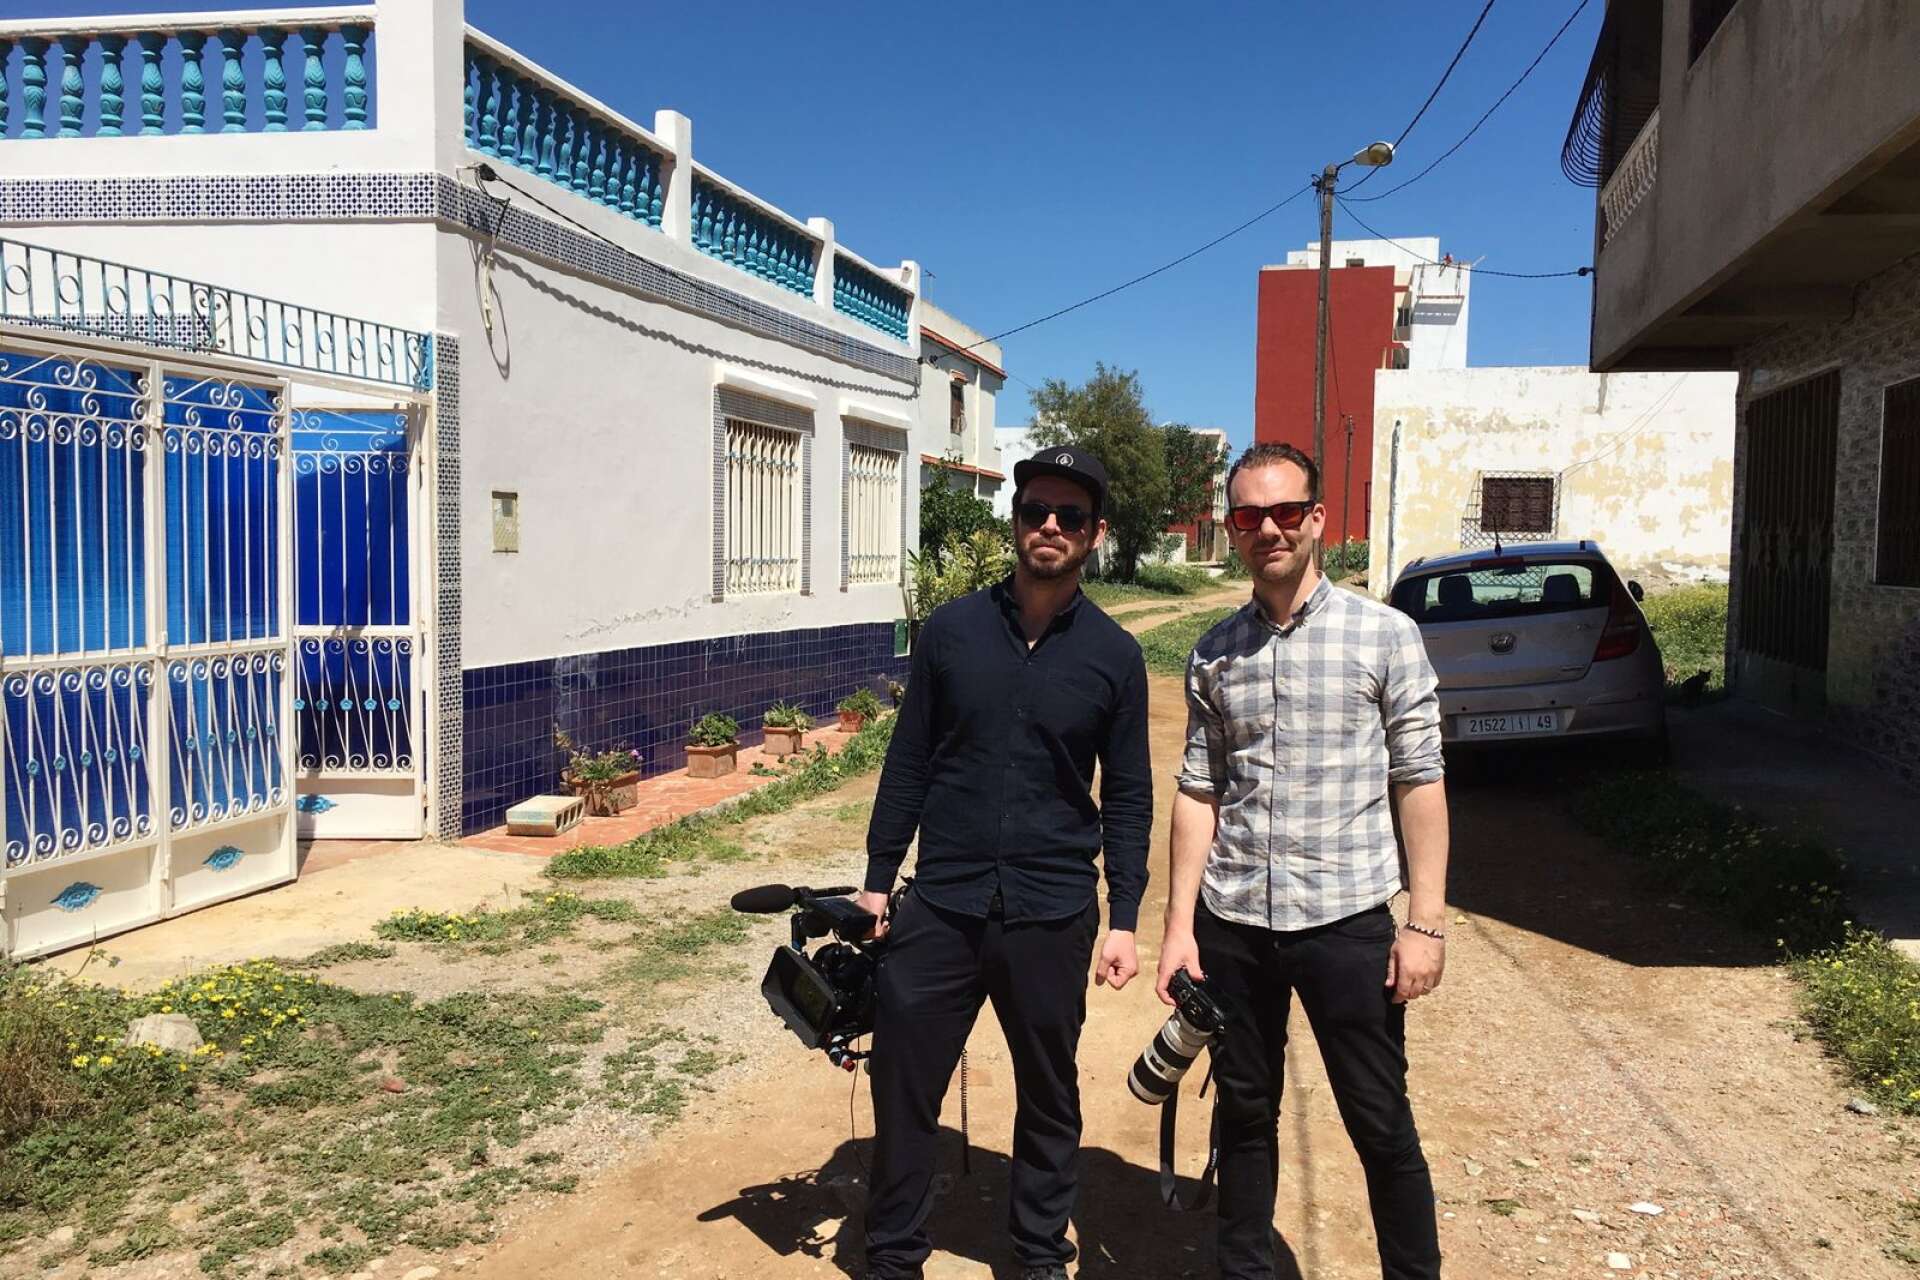 Filmarna Tomas Blideman och Alex Bolevin har följt Leif/Ahmed i över ett år. Det har resulterat i dokumentären ”Bekännelsen”,